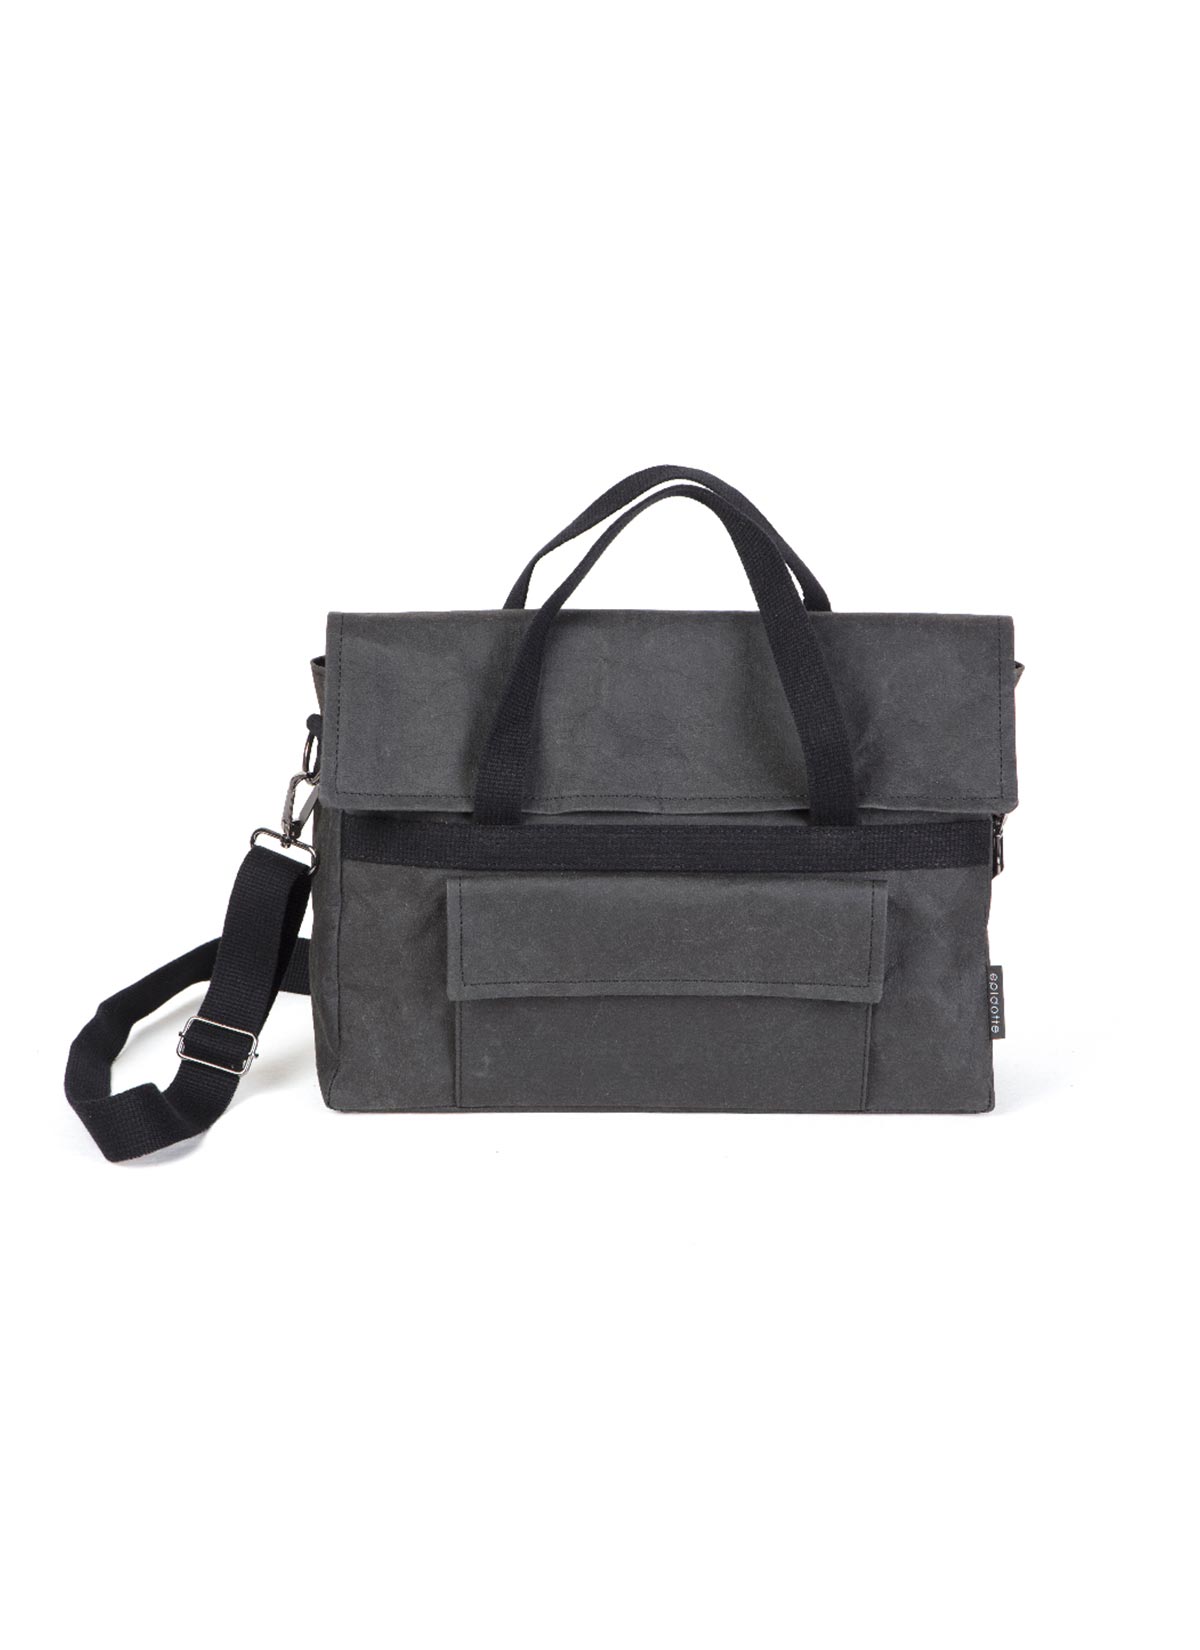 Carry Bag Black